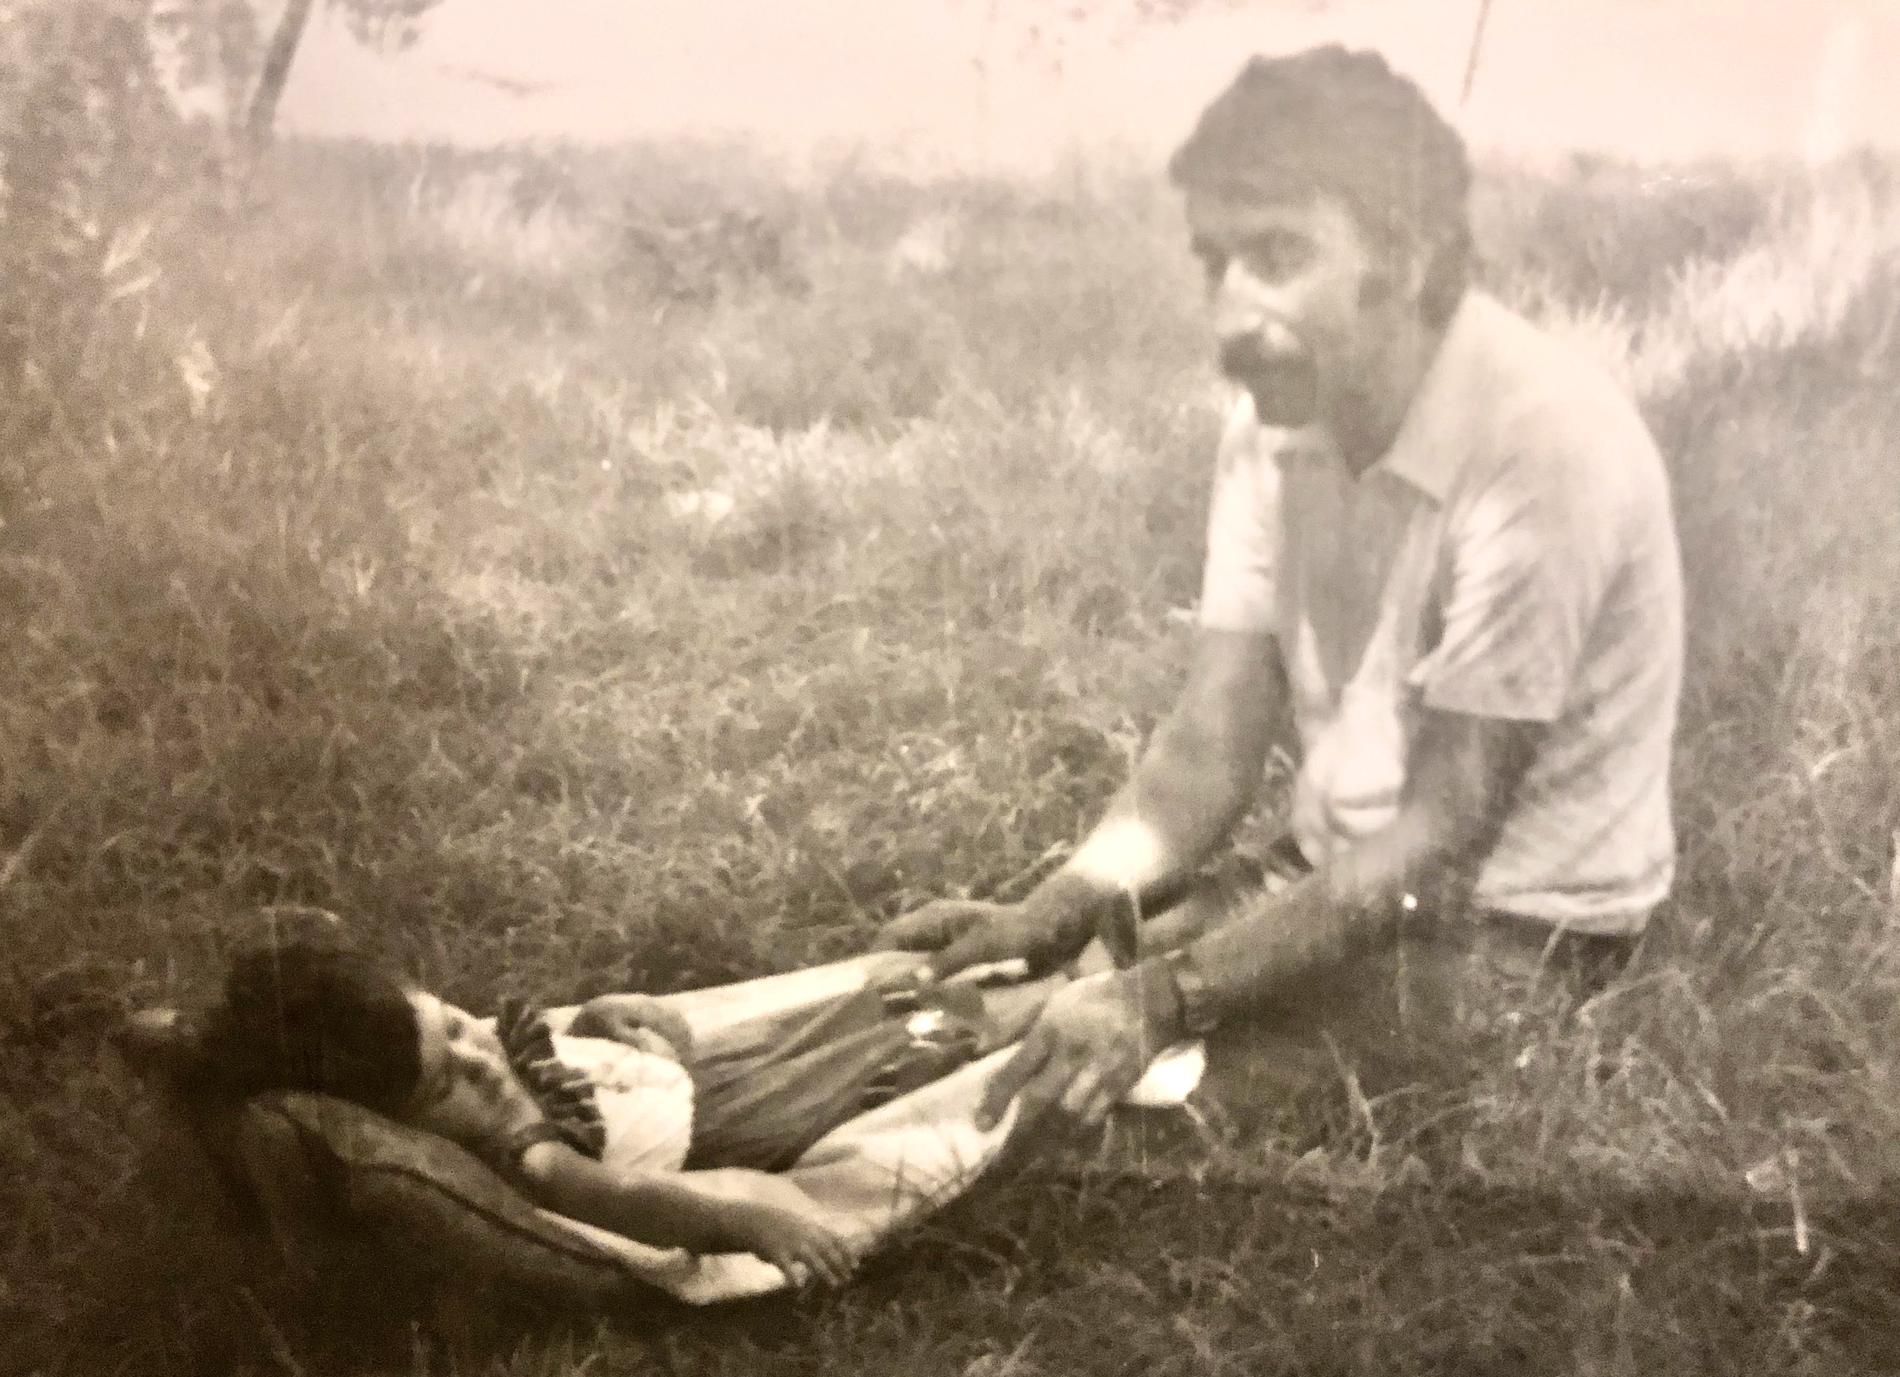 Dottern Gulan Sprango: ”Bilden är frå när han gungade mig till sömns under hans lunch på jobbet när vi brukade hälsa på honom innan vi var tvungna att fly landet”.